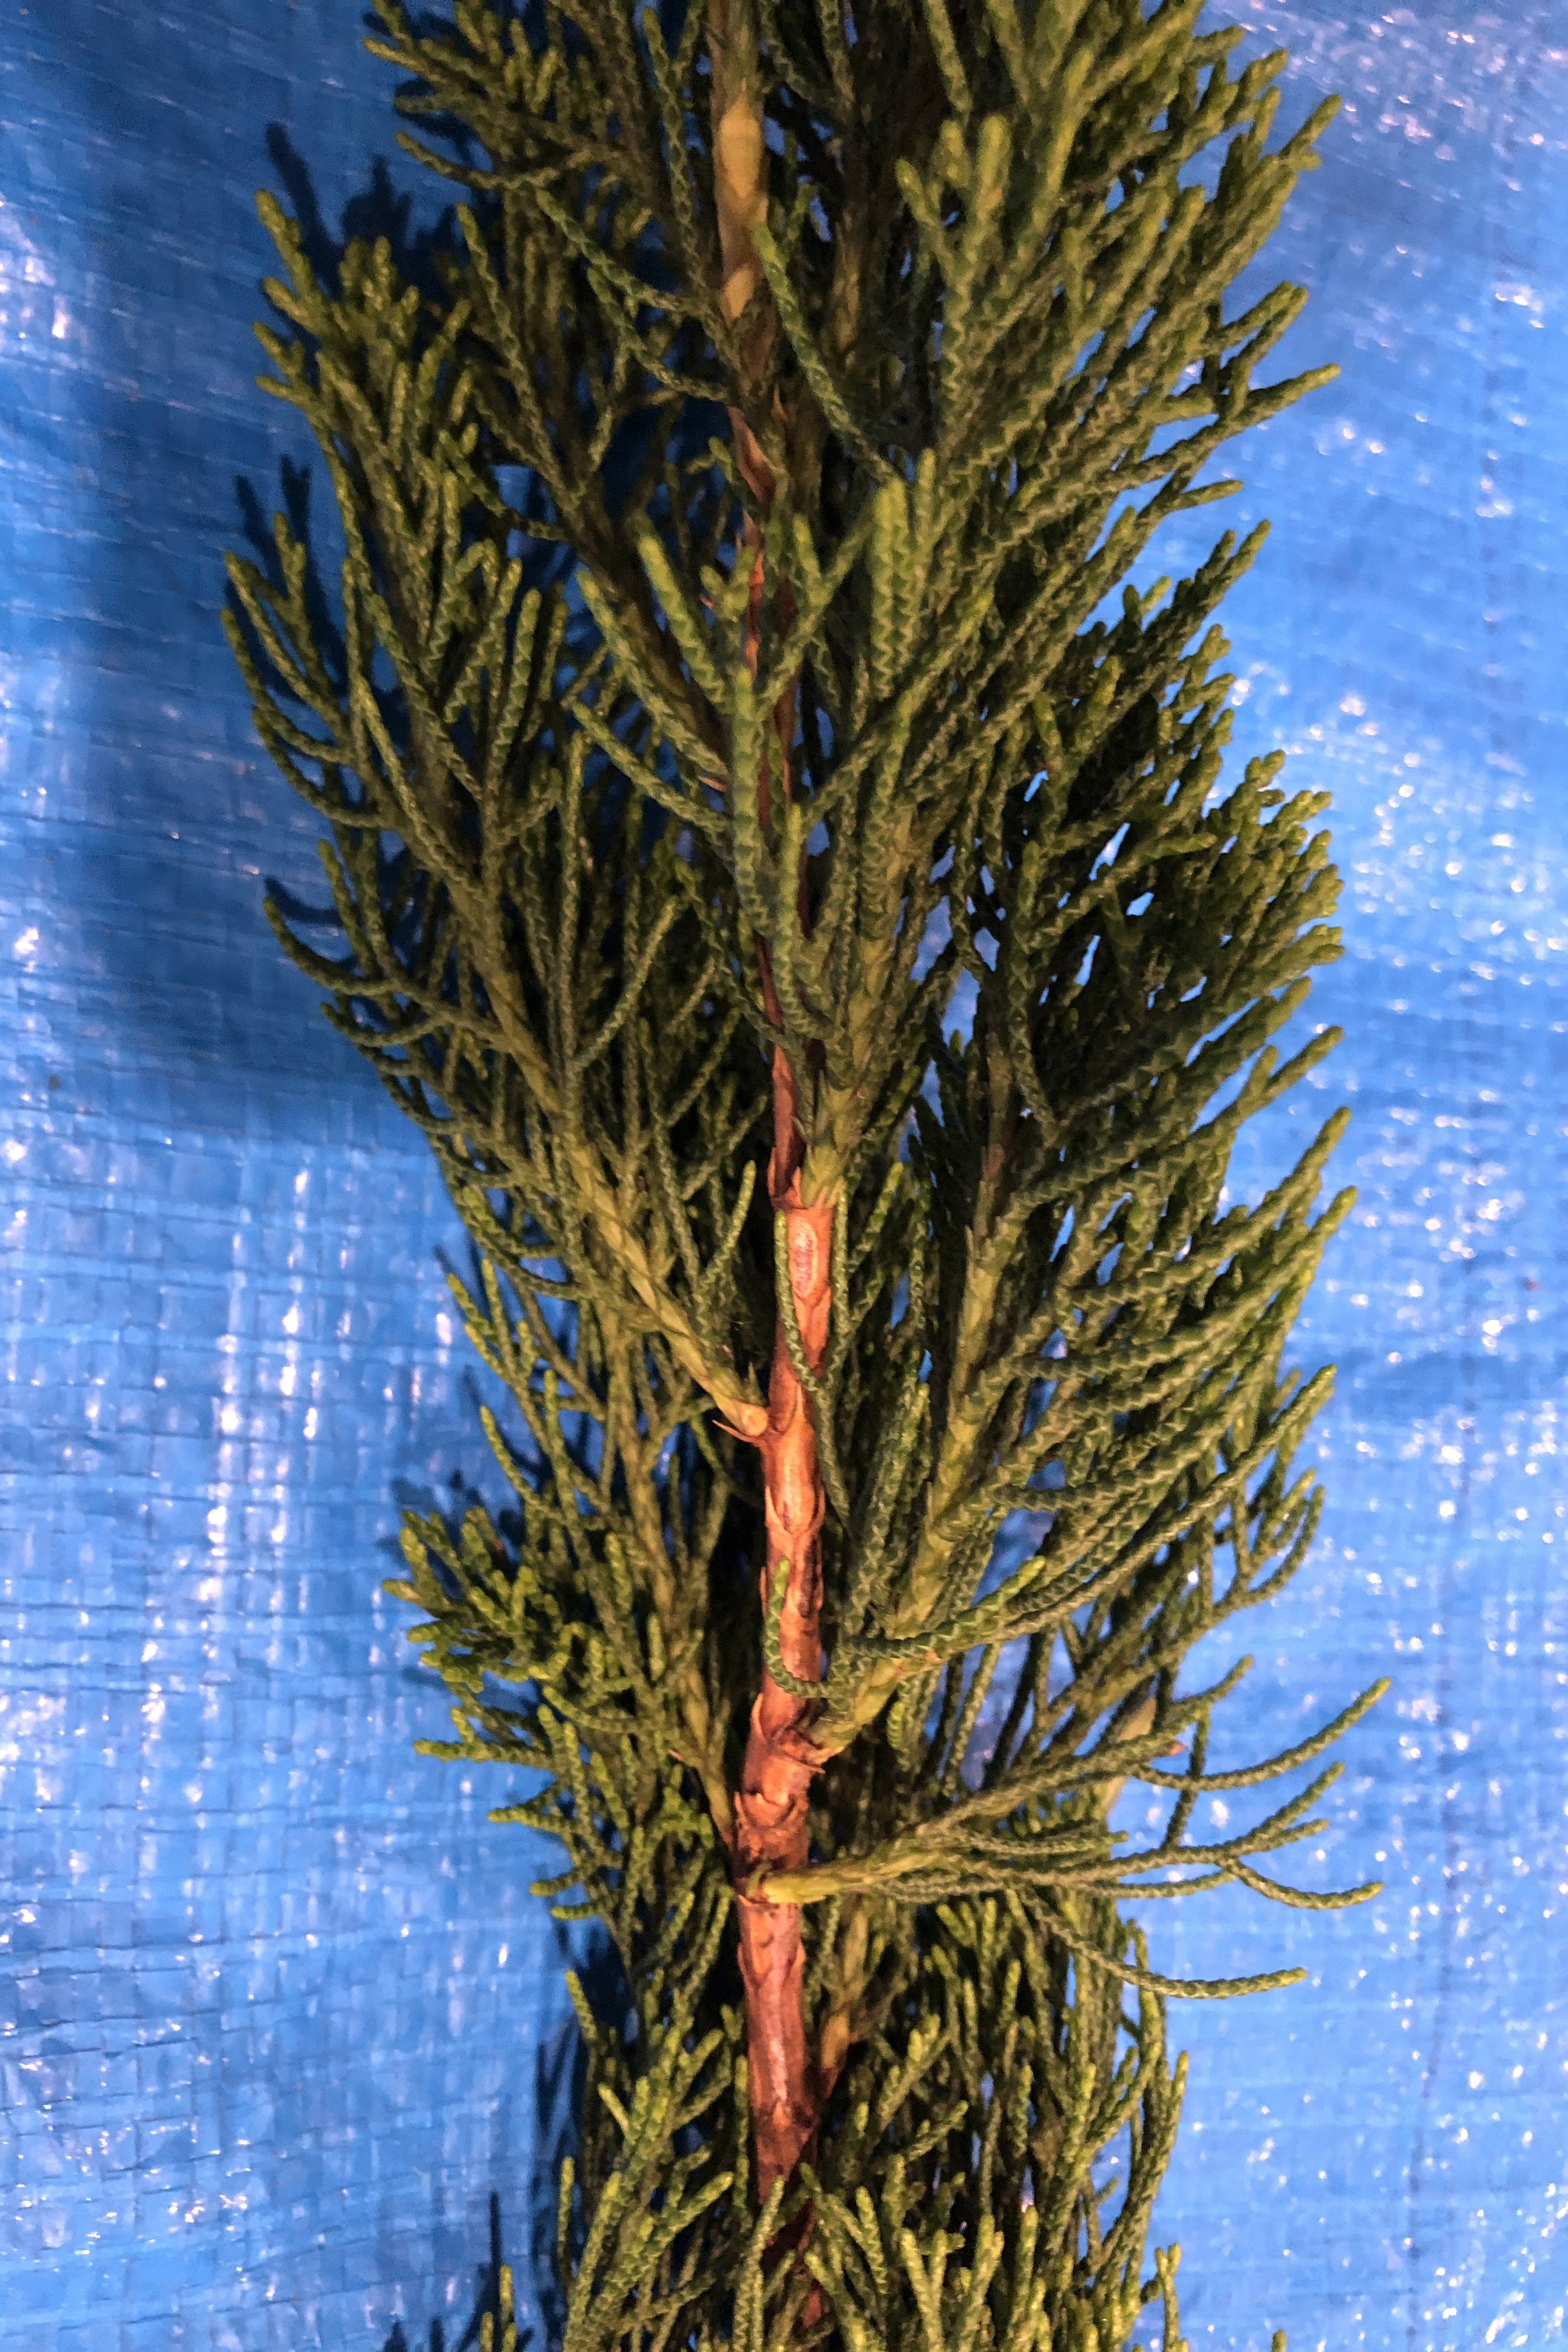 カイズカイブキ - Juniperus chinensis 'Kaizuka'